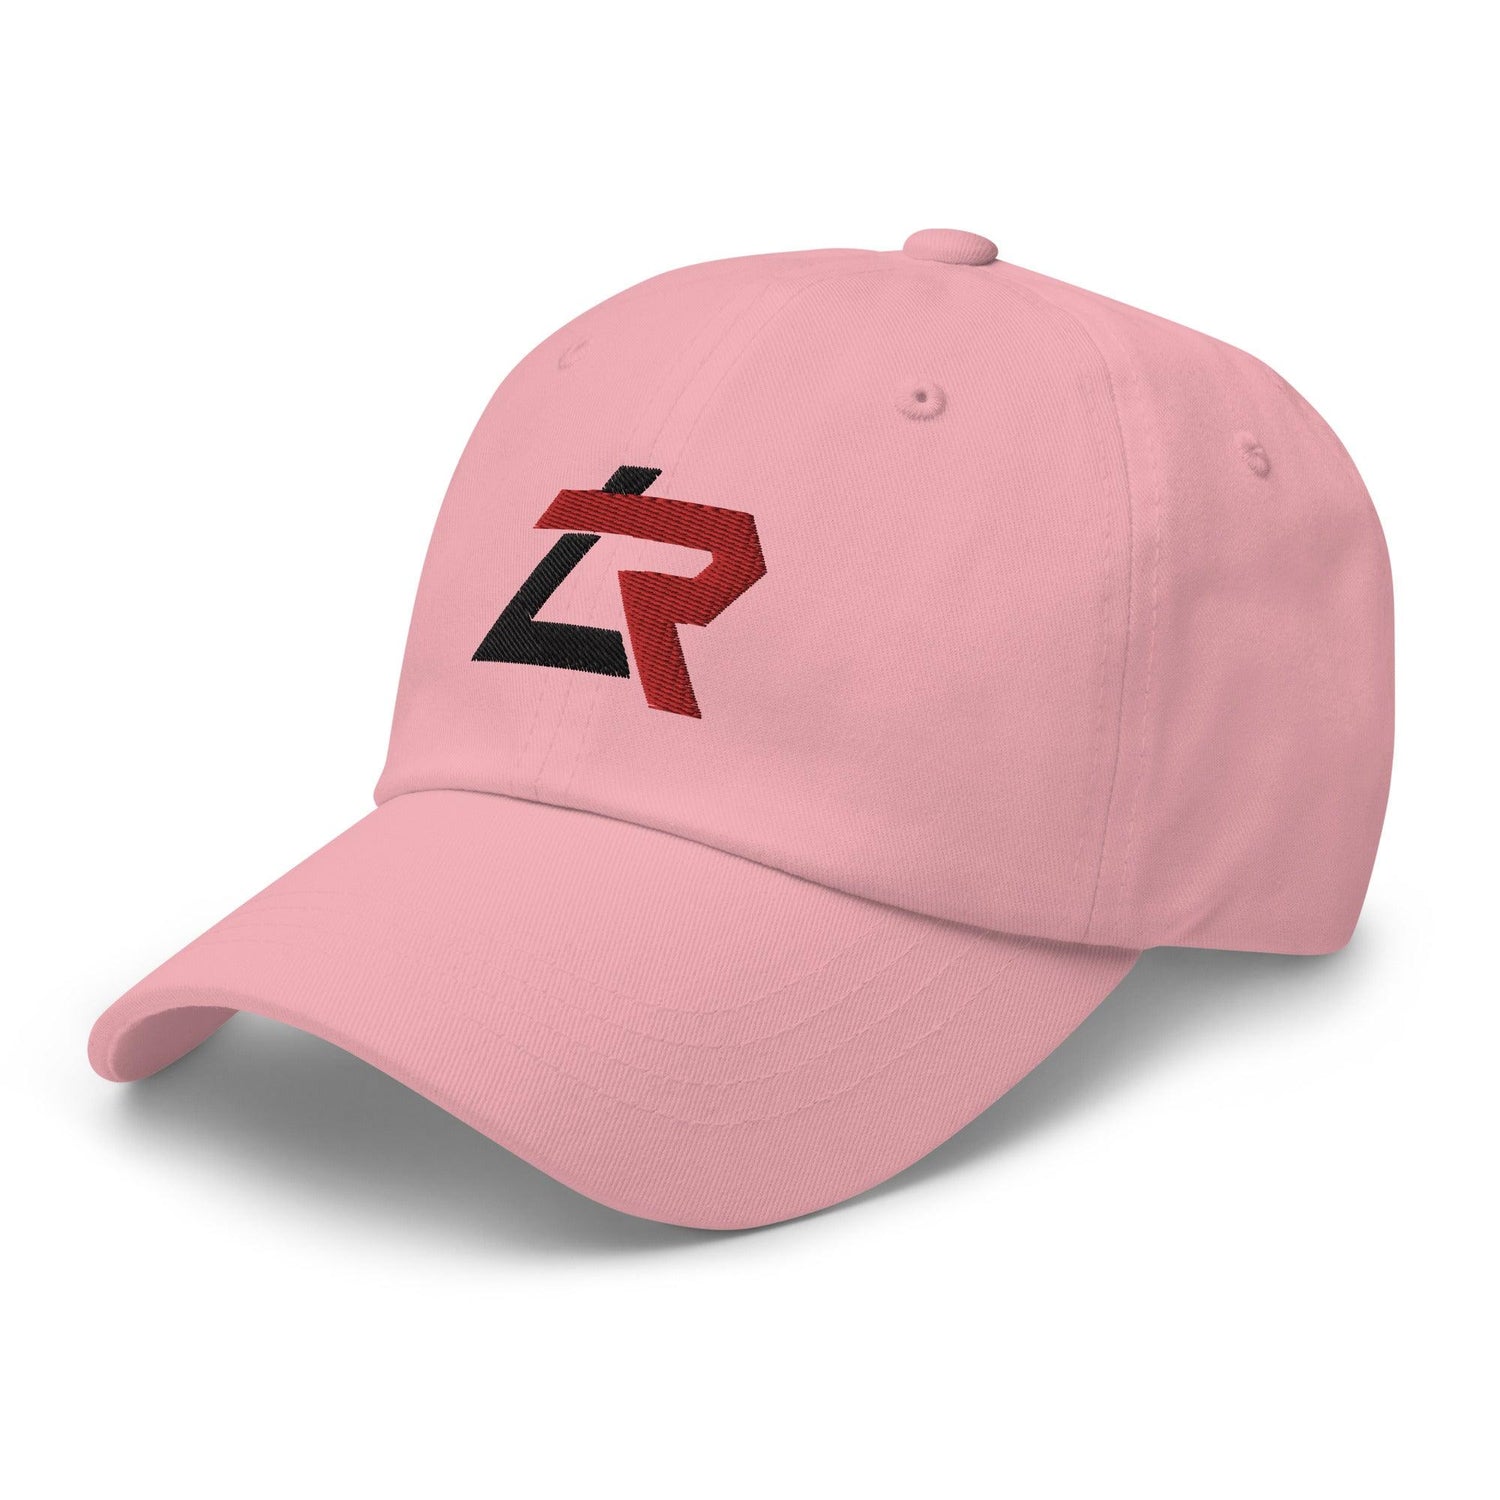 Lyon Richardson "LR" hat - Fan Arch